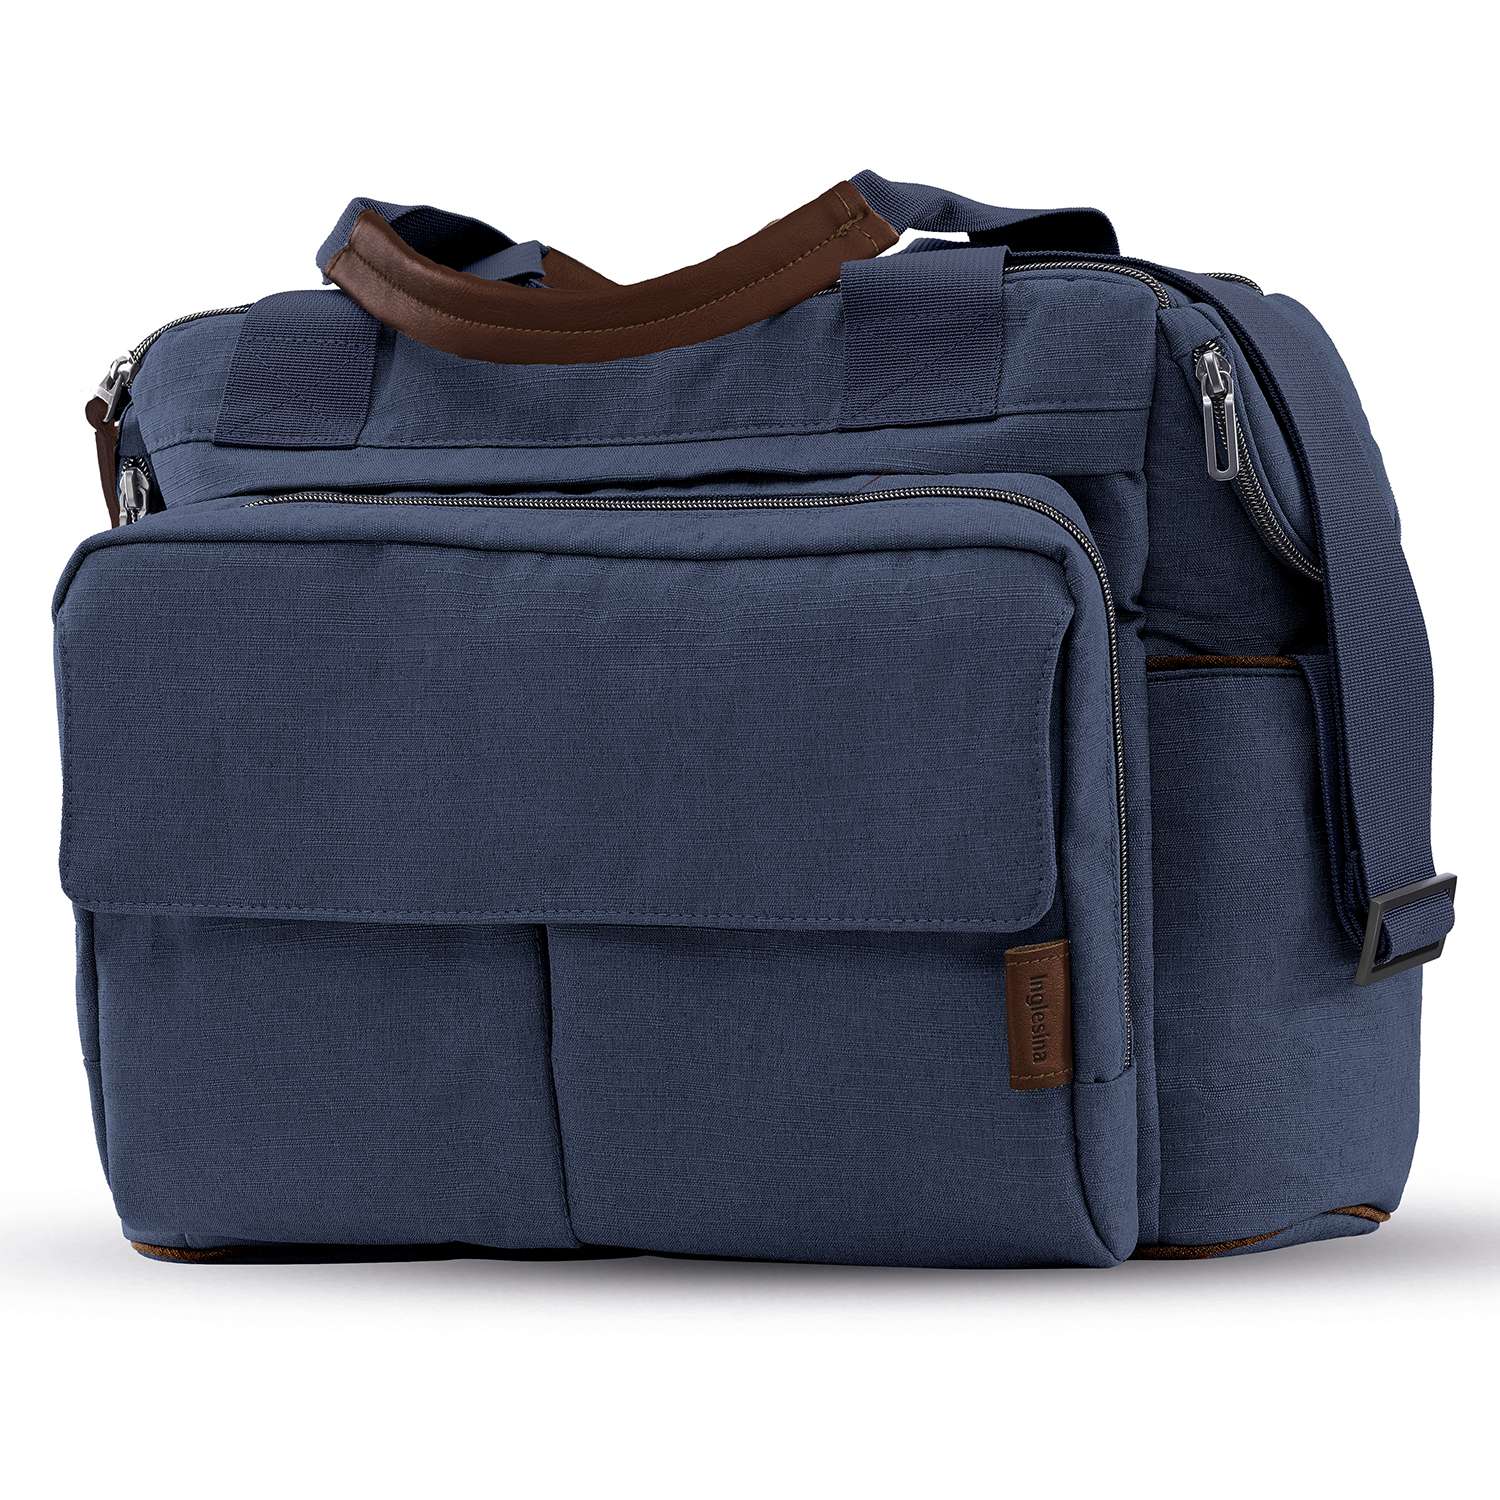 Сумка для коляски Inglesina Dual Bag Oxford Blue - фото 1